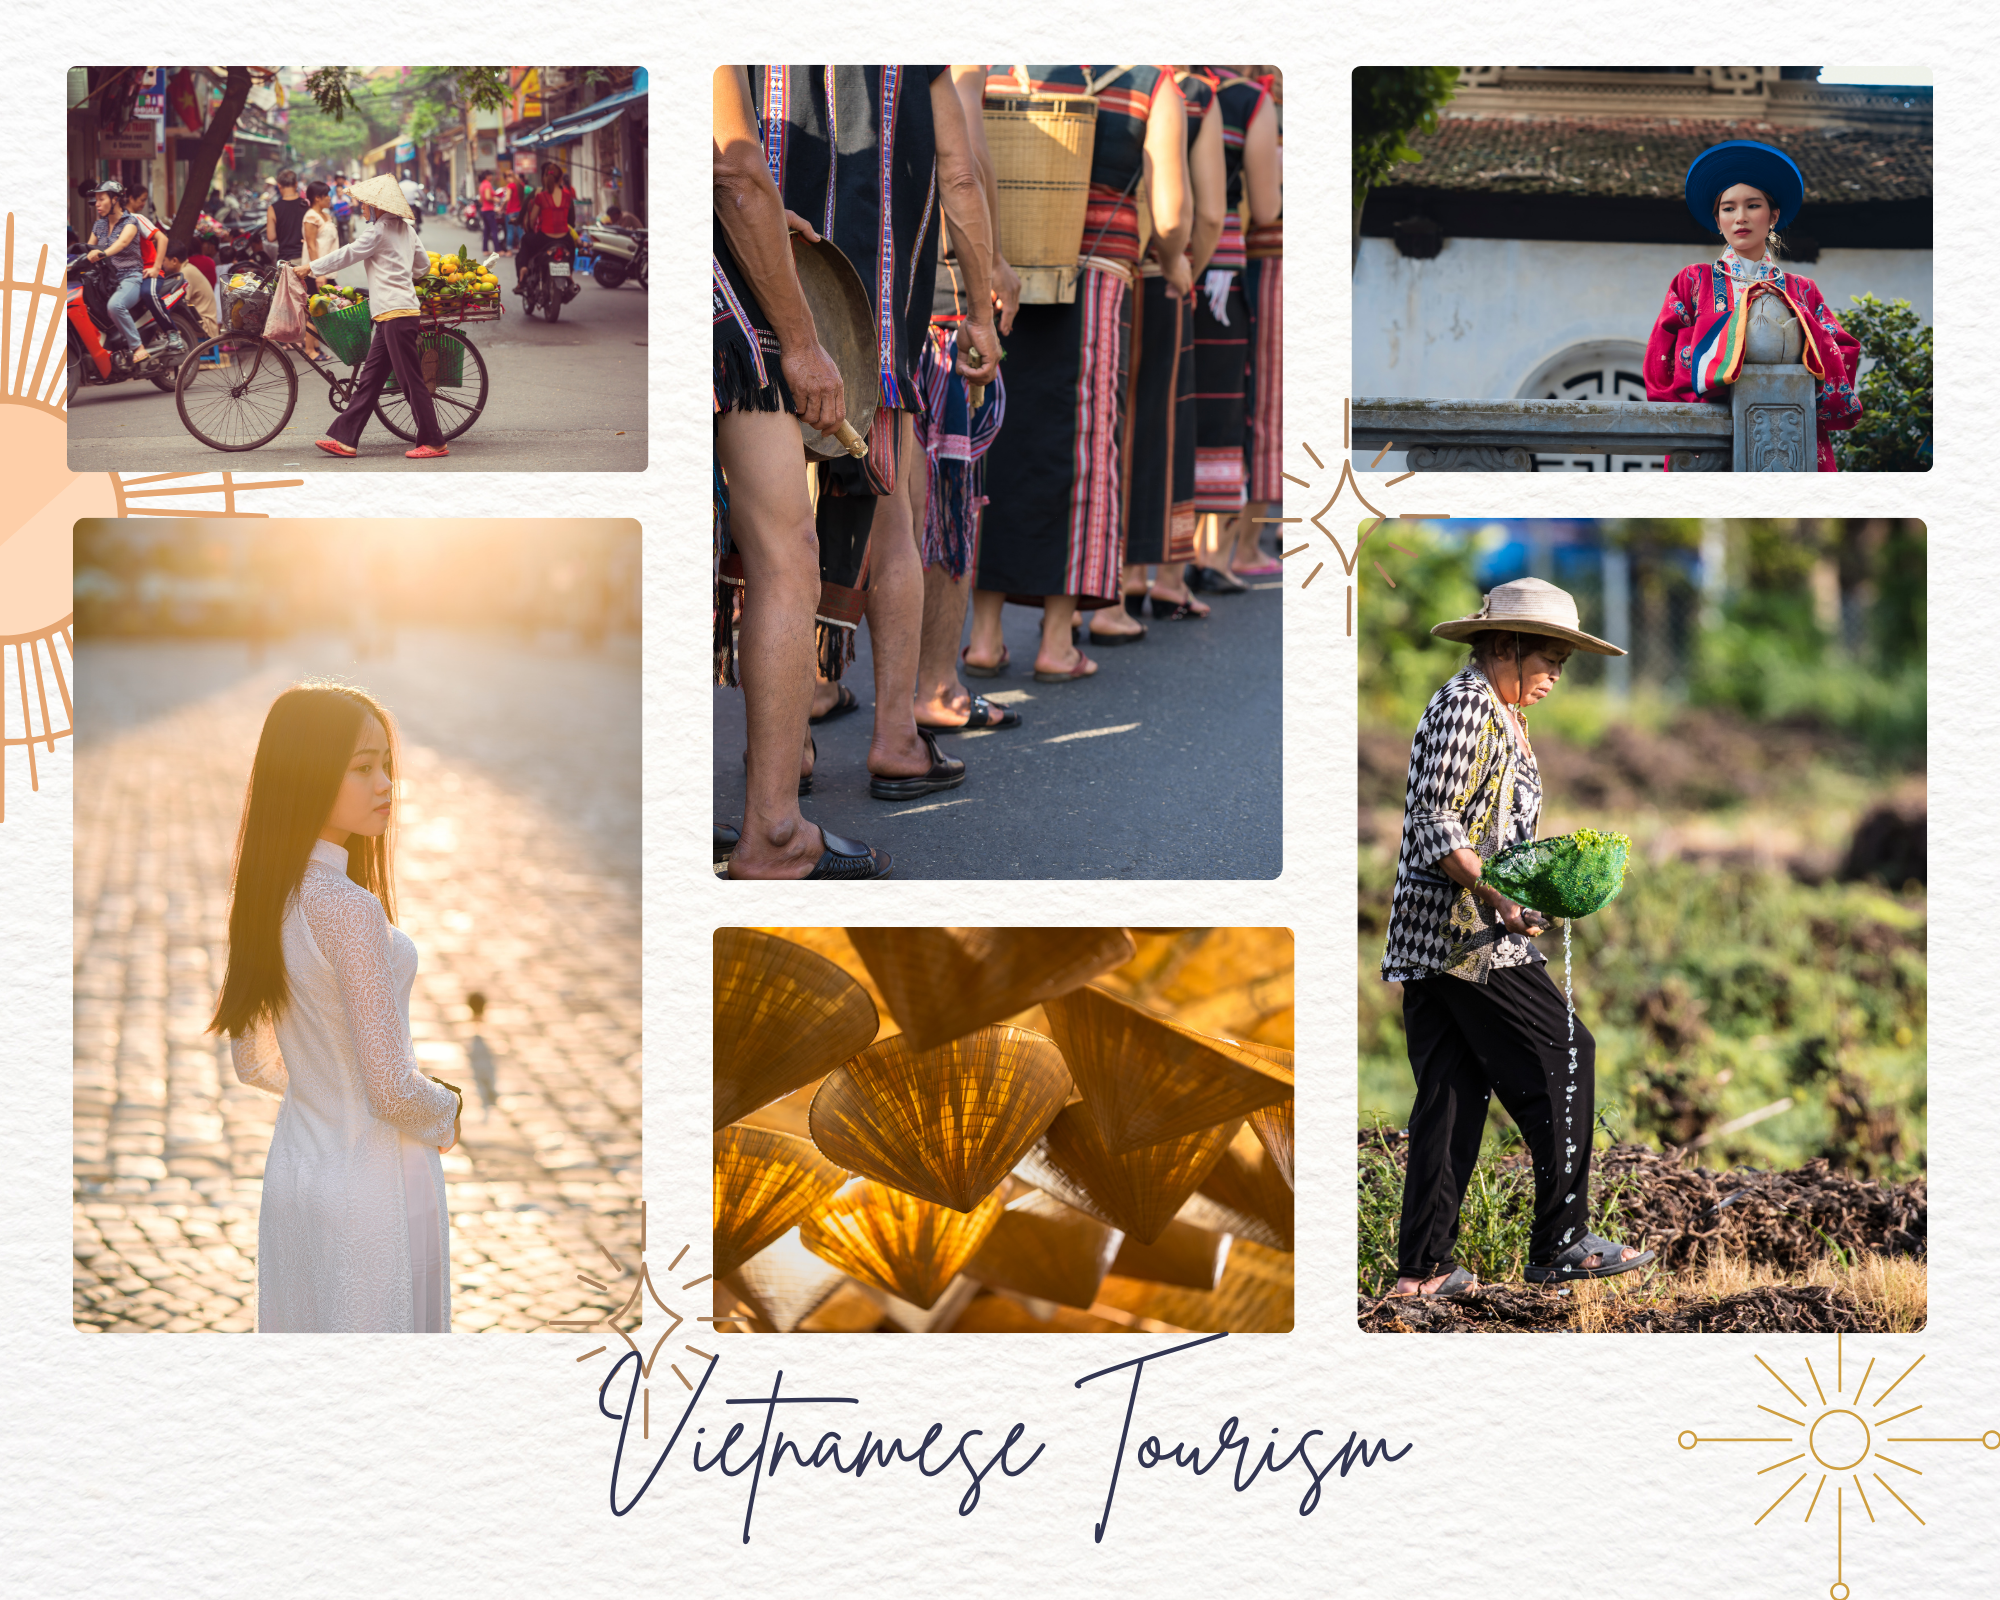 Vietnam-tourism